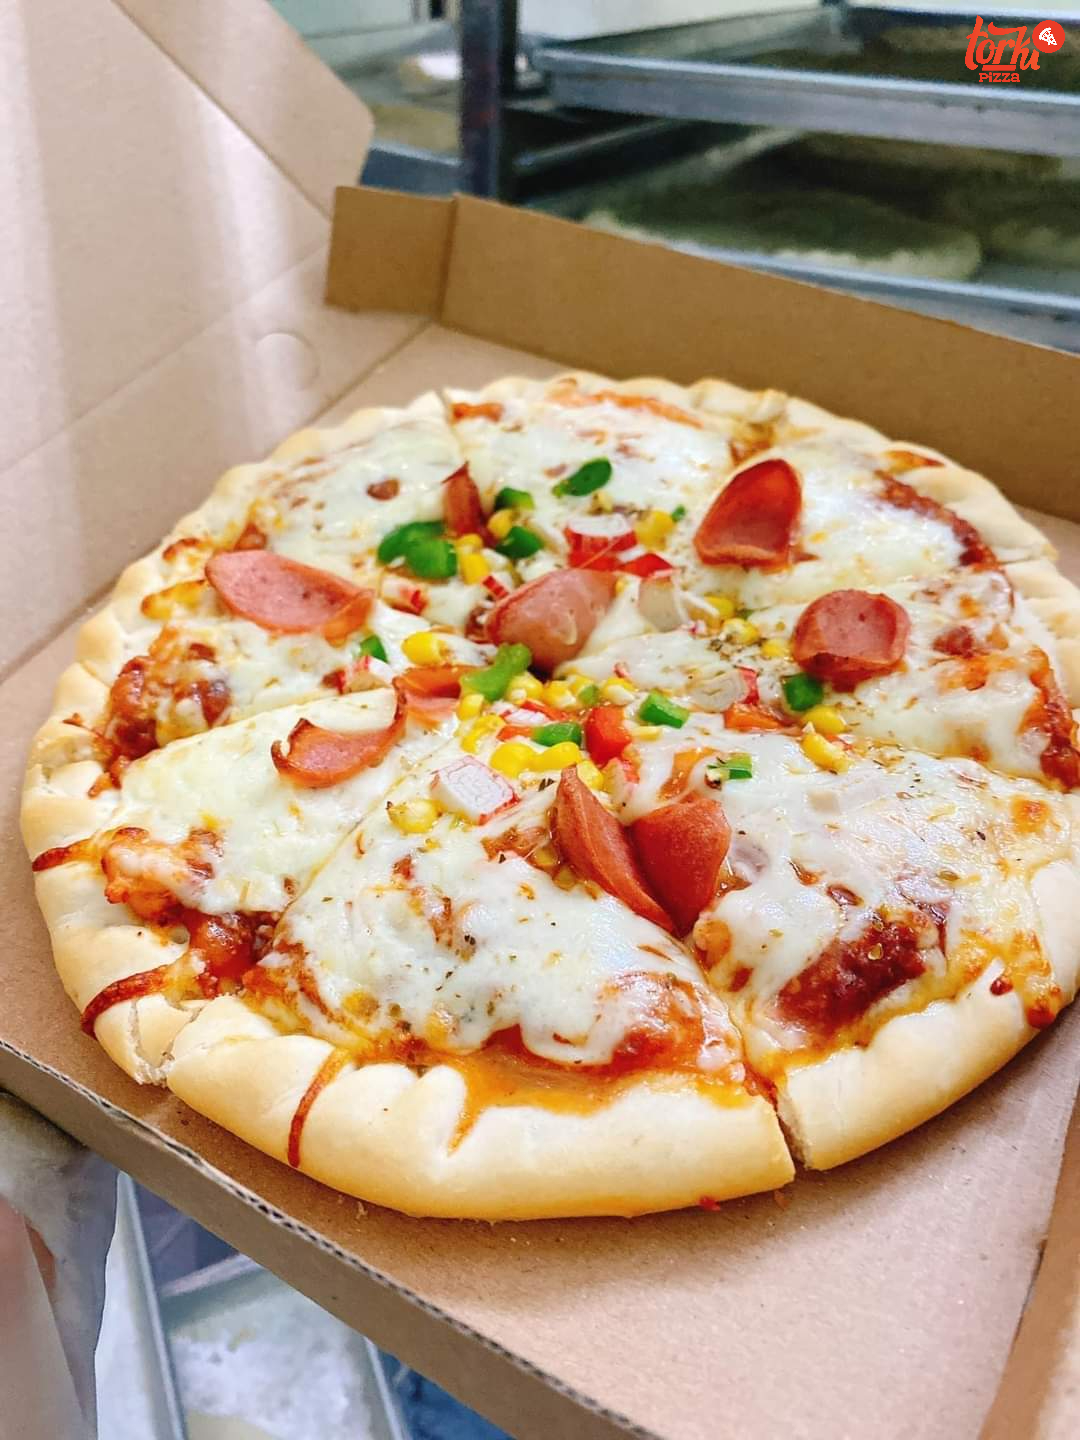 Pizza xúc xích là món Pizza cực được lòng người Việt